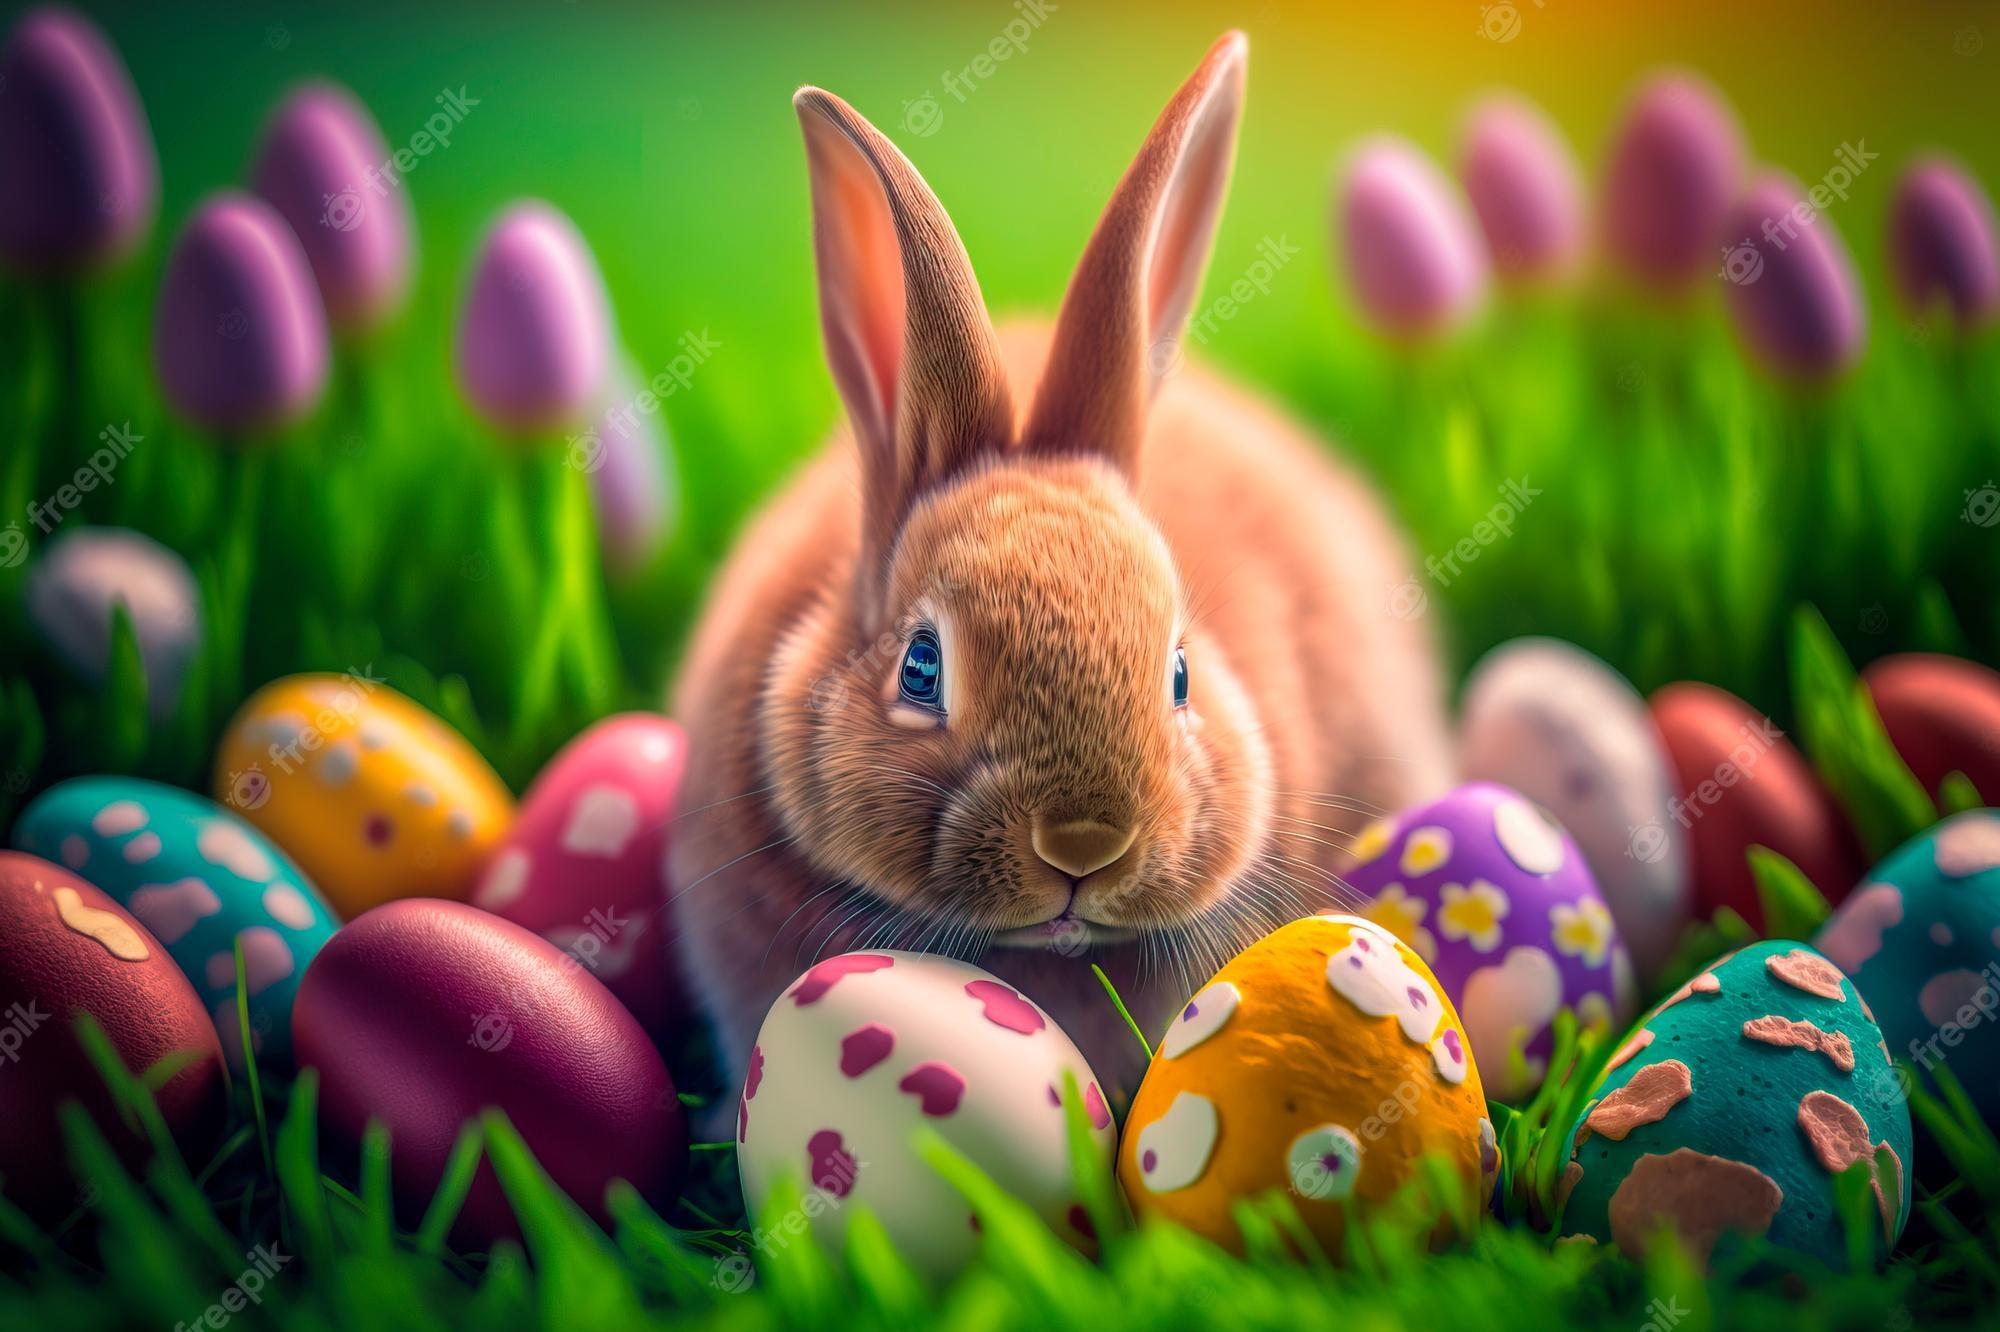 37 Cute Easter Bunny Wallpapers  WallpaperSafari